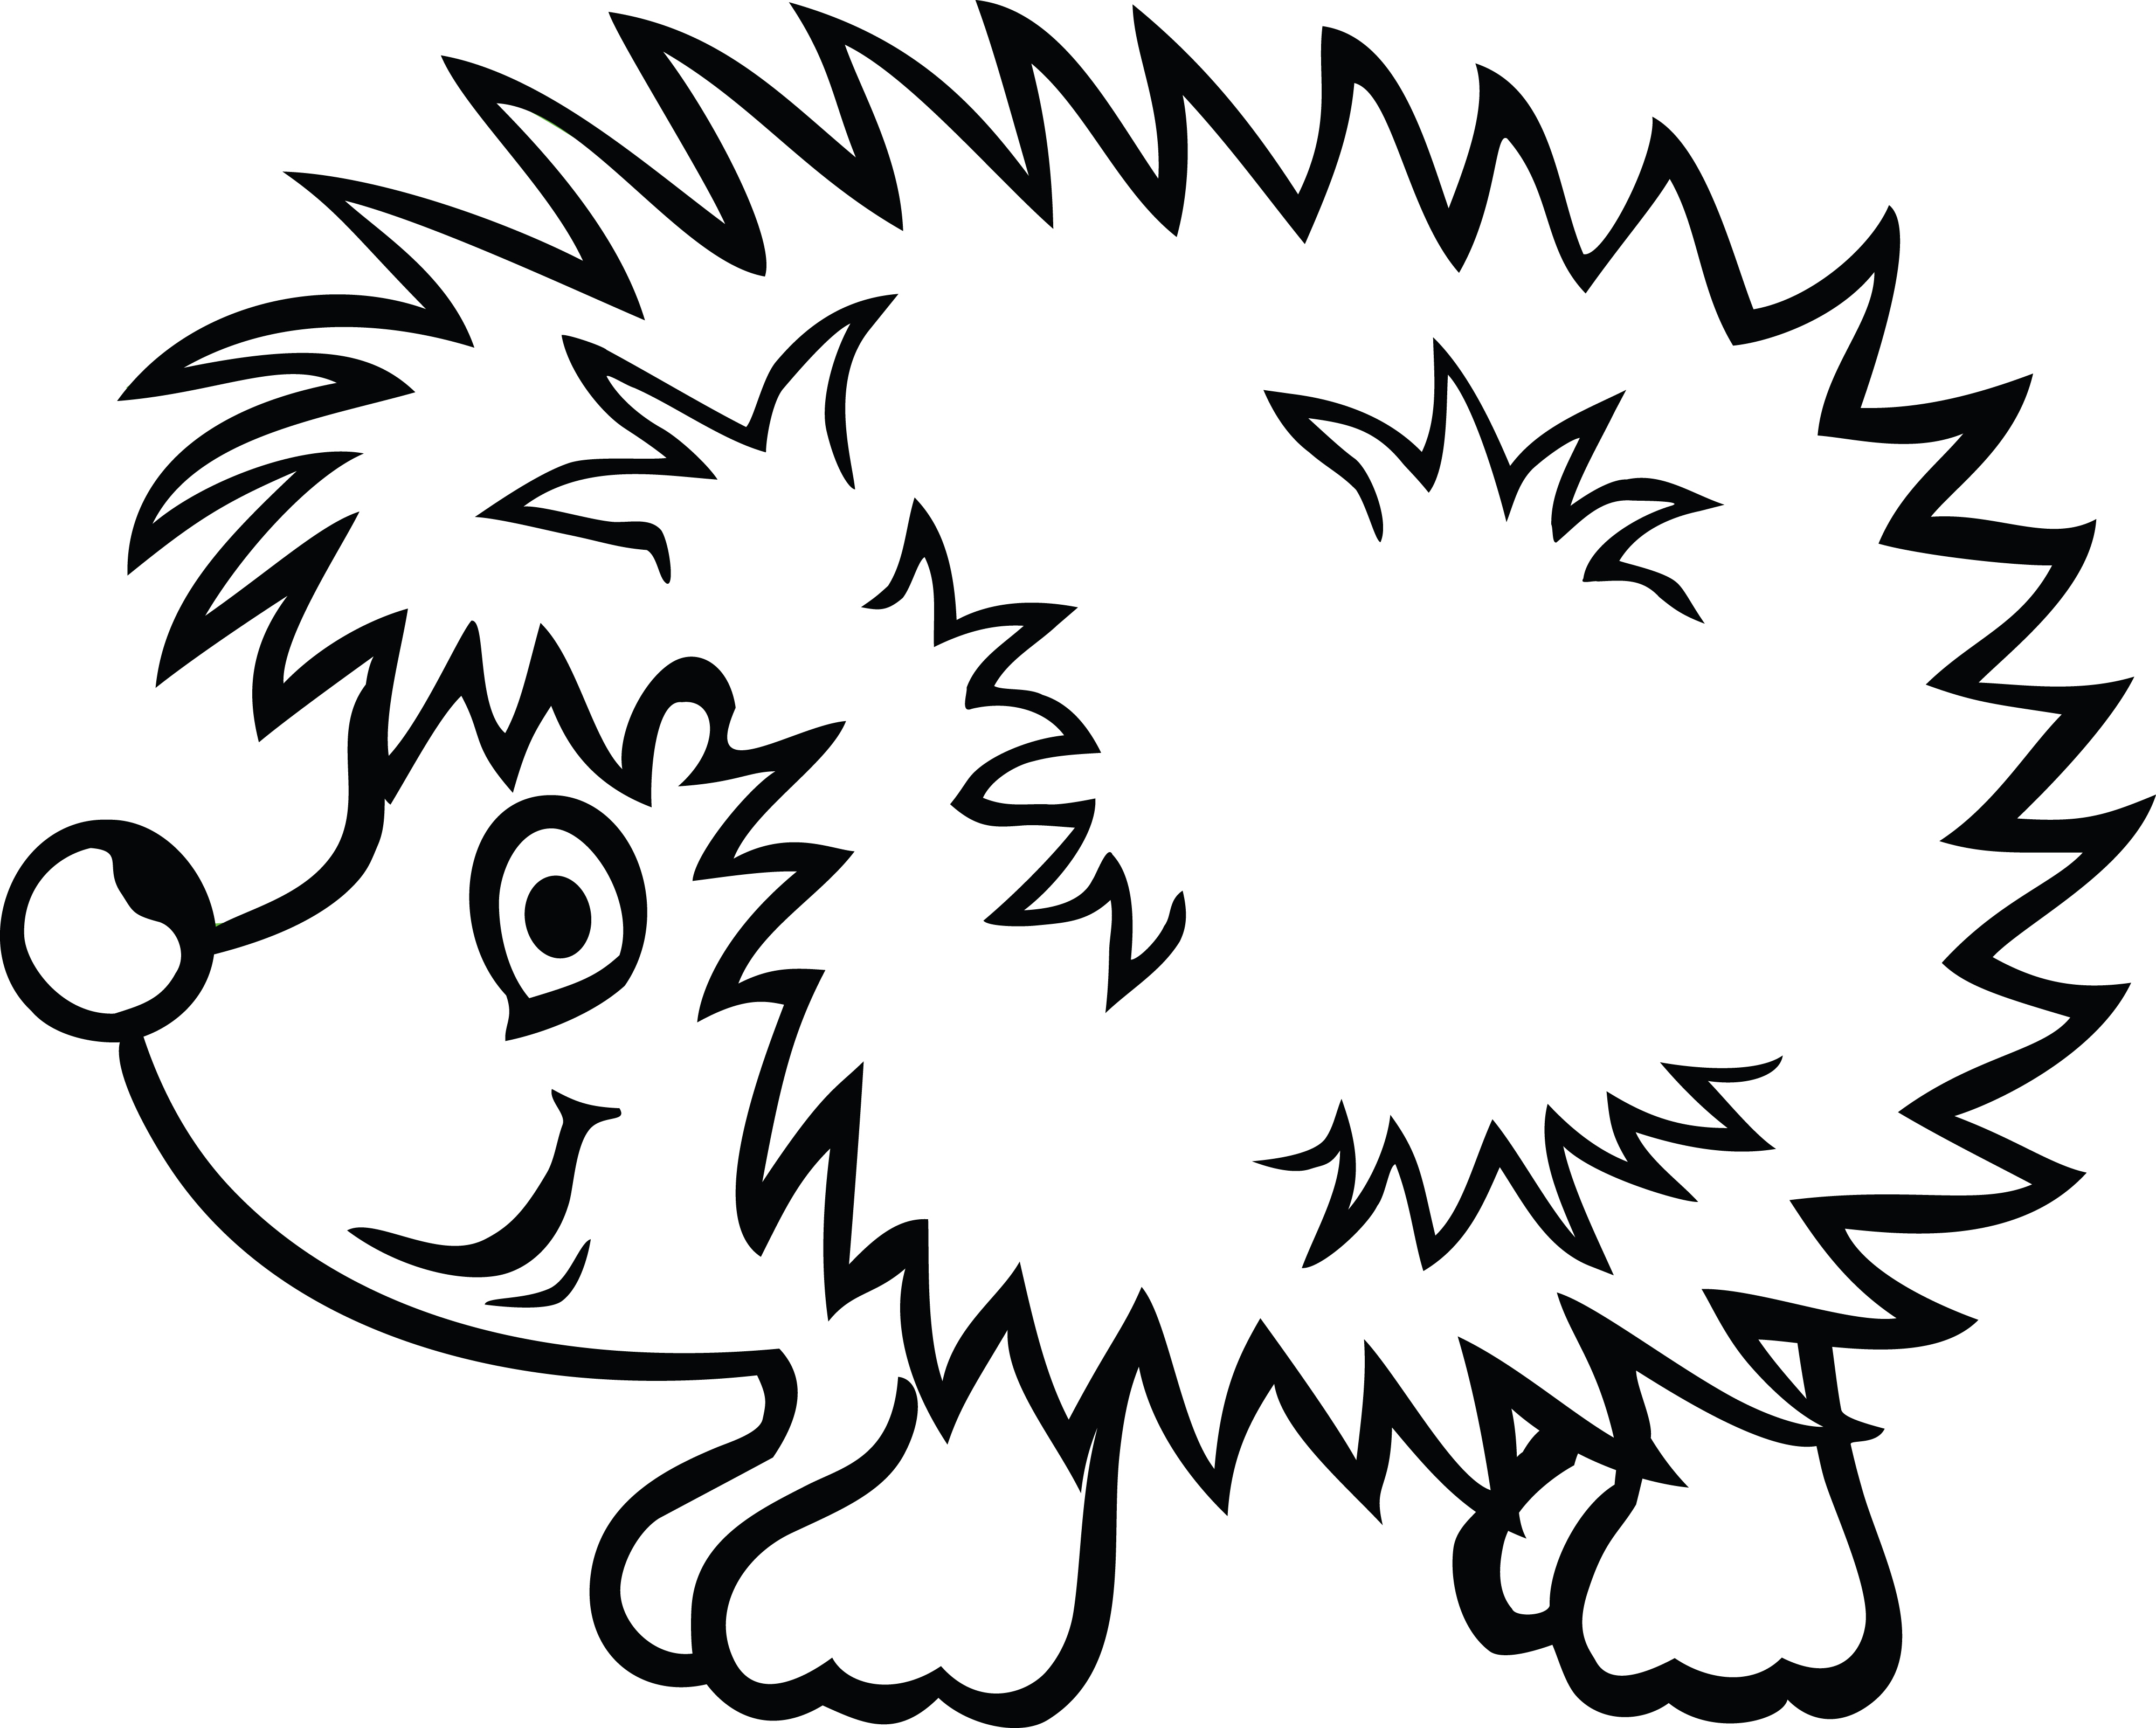 Hedgehog Line Drawing at GetDrawings